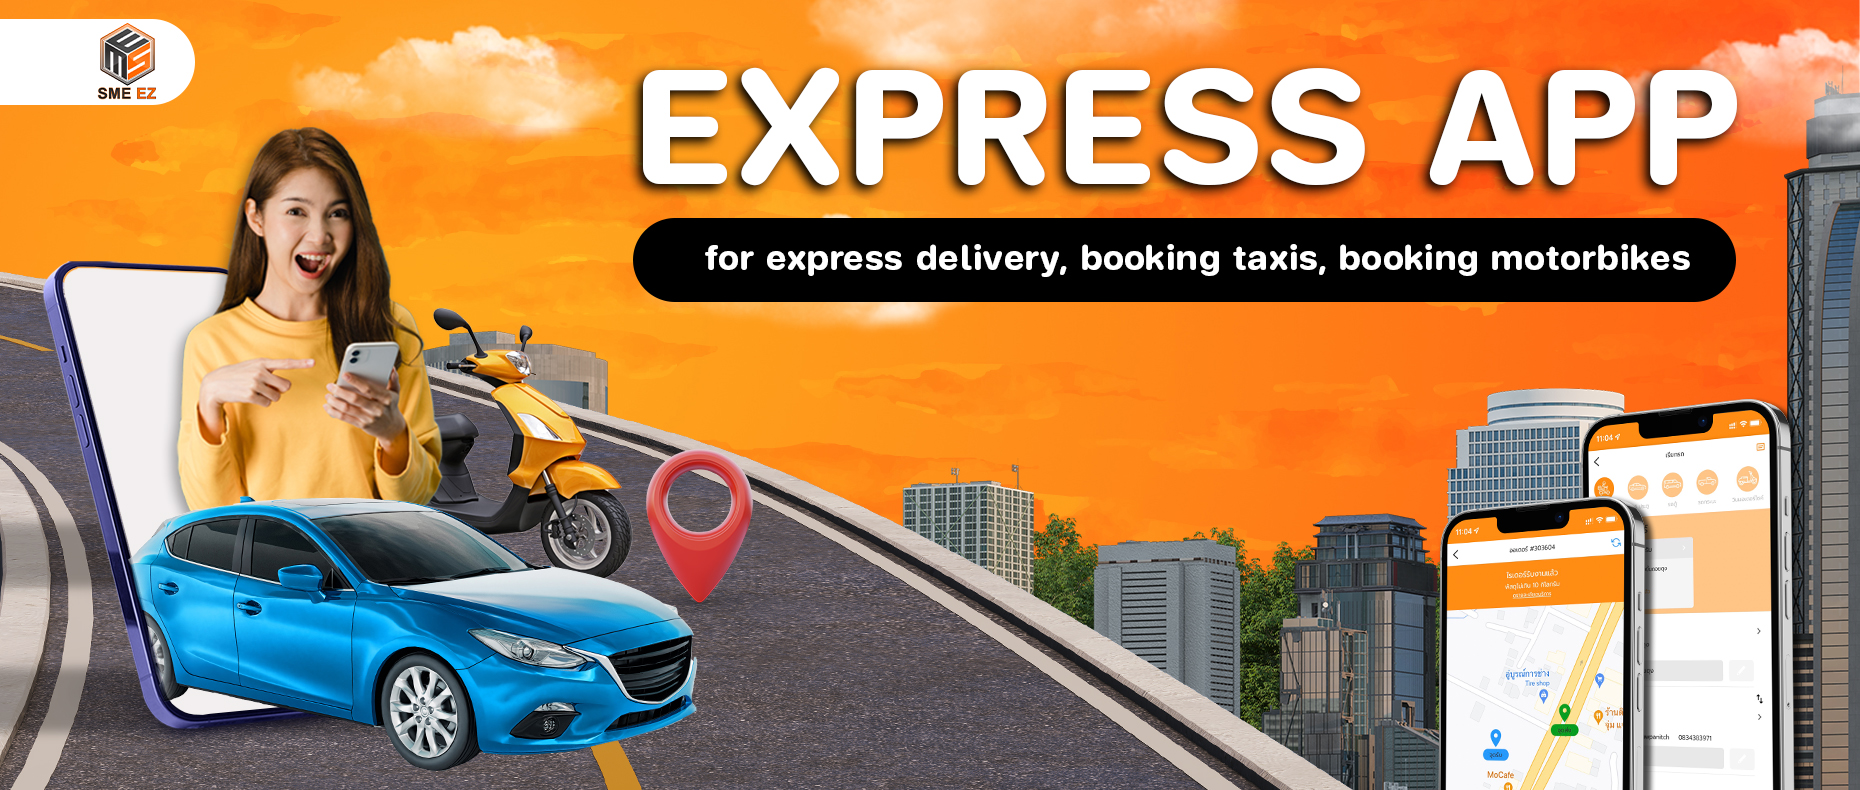 Express App แอพเรียกรถแท็กซี่ รถตู้ วินส่งพัสดุ ที่เจ้าของธุรกิจต้องมี